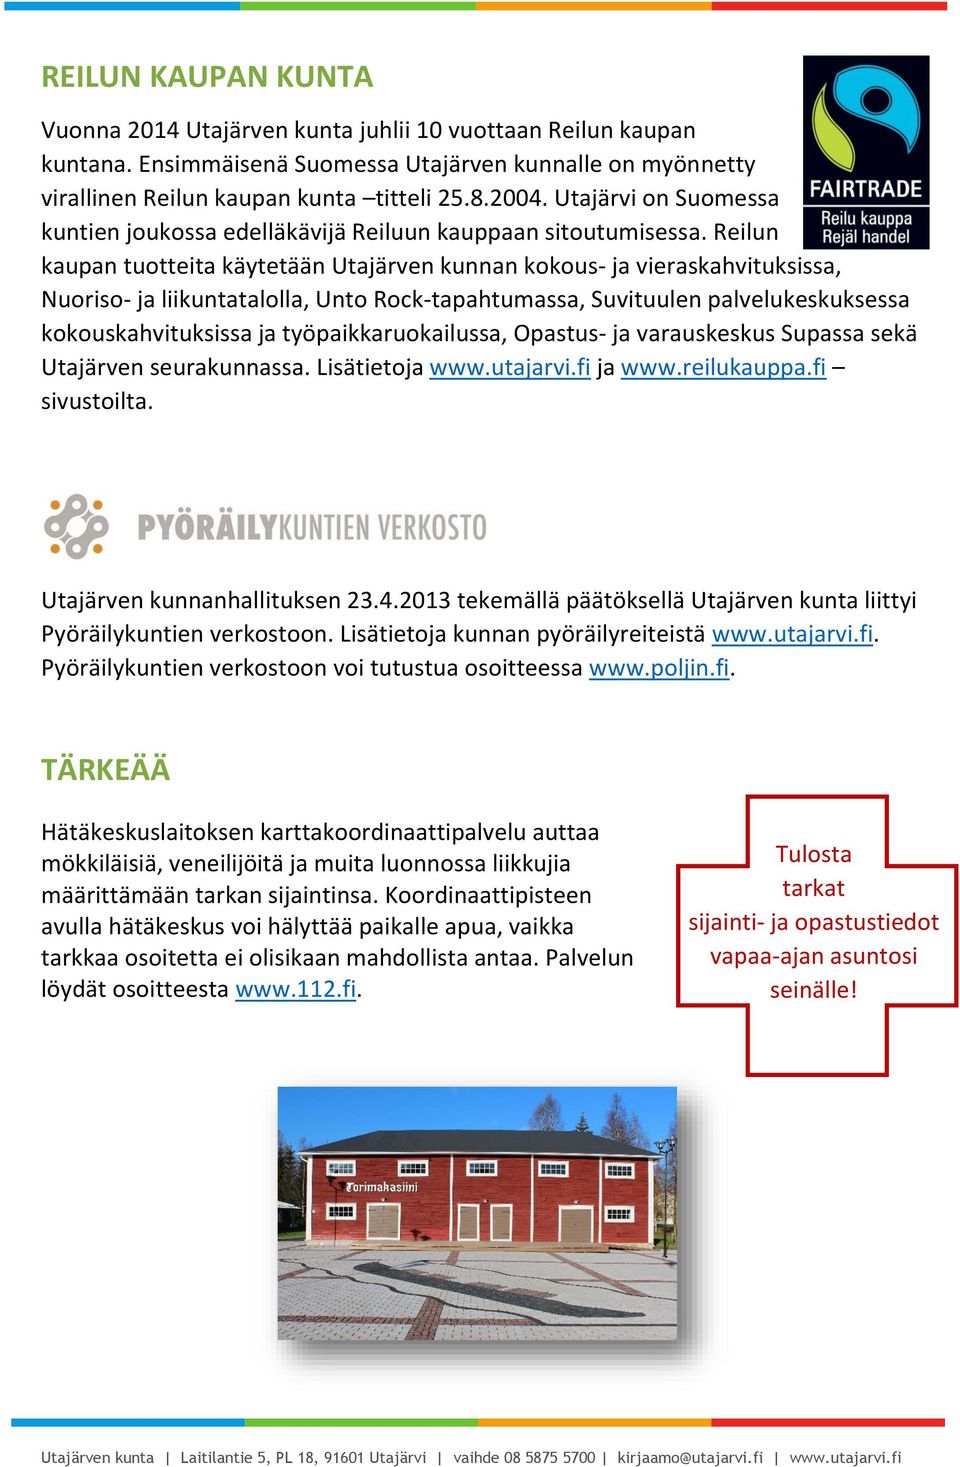 Reilun kaupan tuotteita käytetään Utajärven kunnan kokous- ja vieraskahvituksissa, Nuoriso- ja liikuntatalolla, Unto Rock-tapahtumassa, Suvituulen palvelukeskuksessa kokouskahvituksissa ja